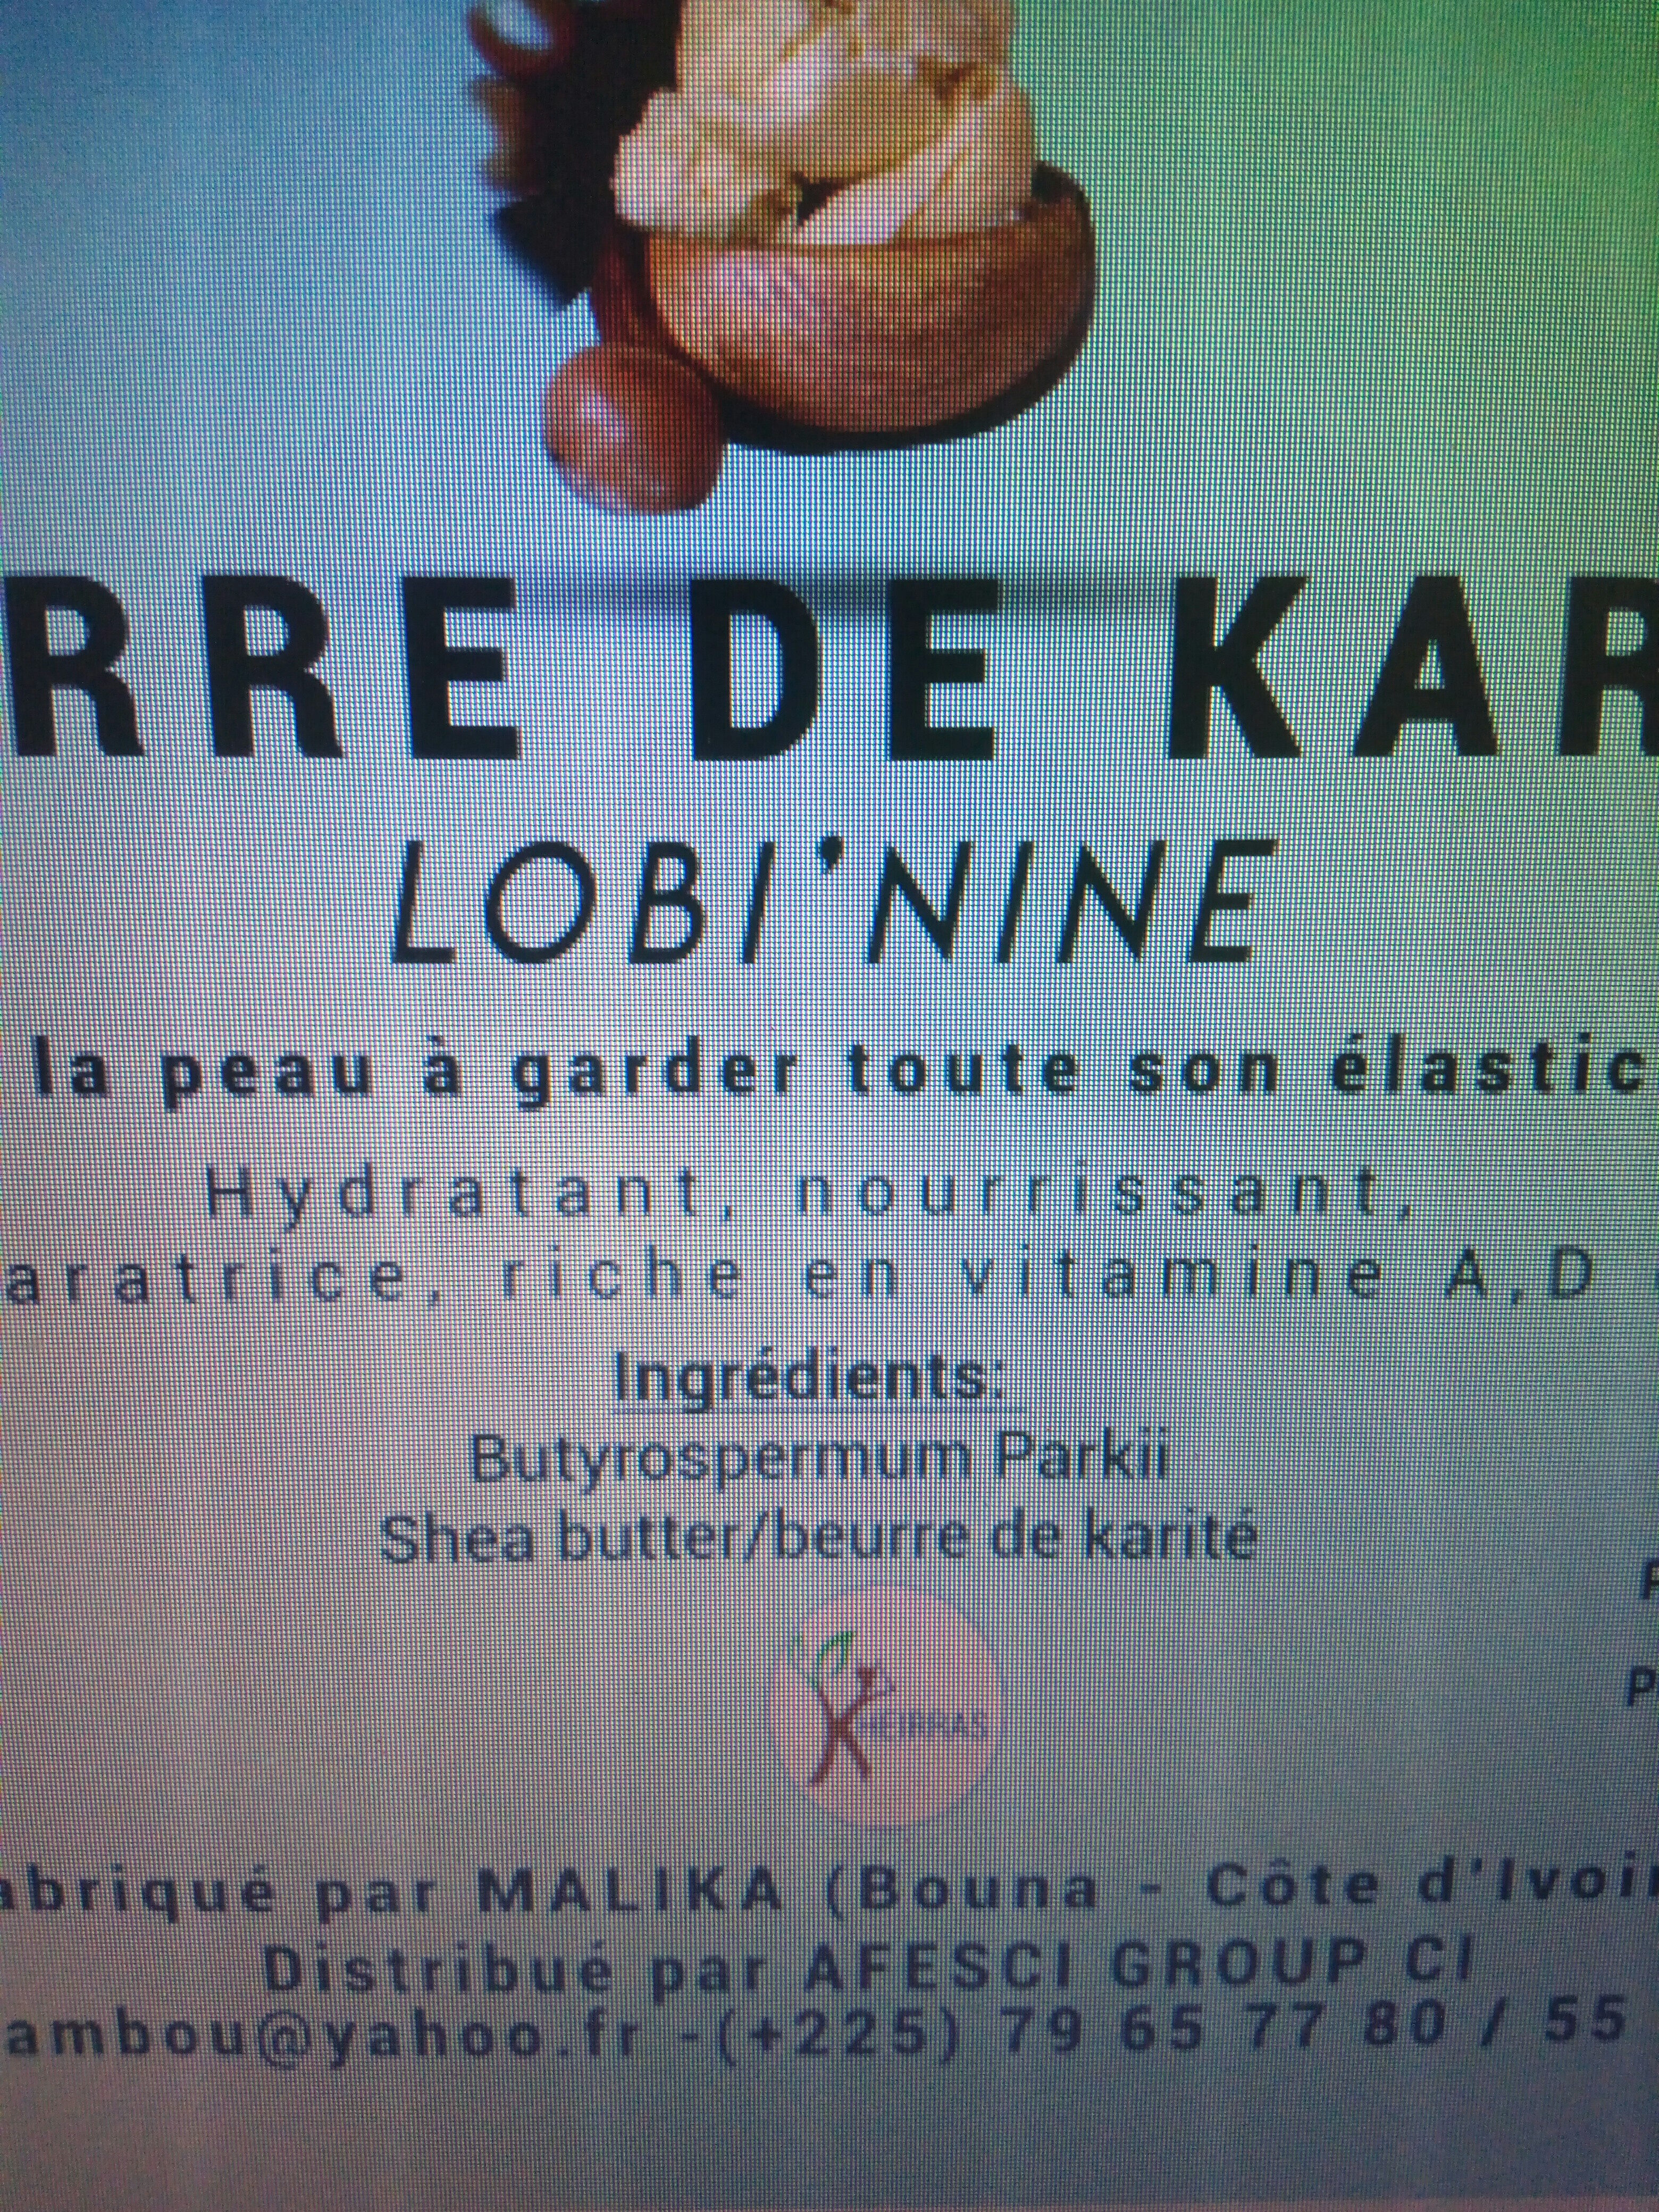 Beurre de karité - Ingrédients - fr